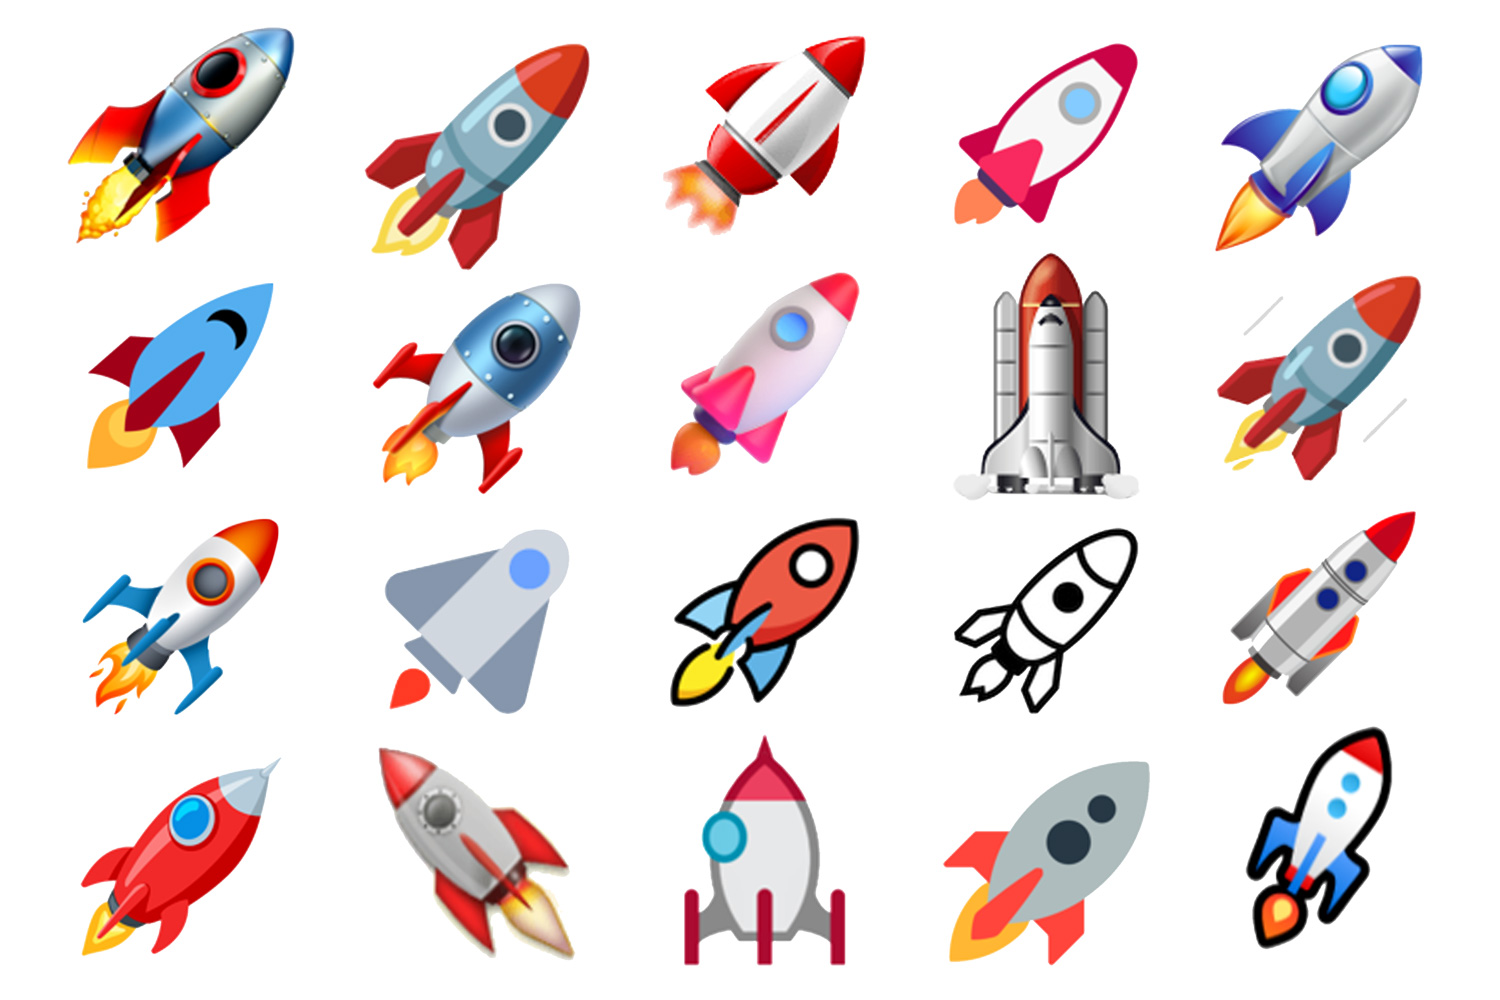 El emoji cohete representa principalmente todo lo que tiene que ver con el cosmos y la astrología